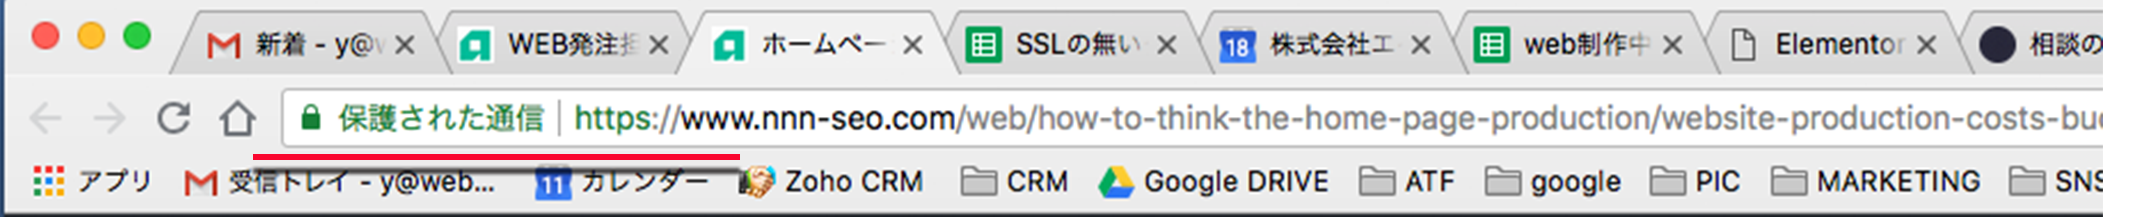 googel-SSL